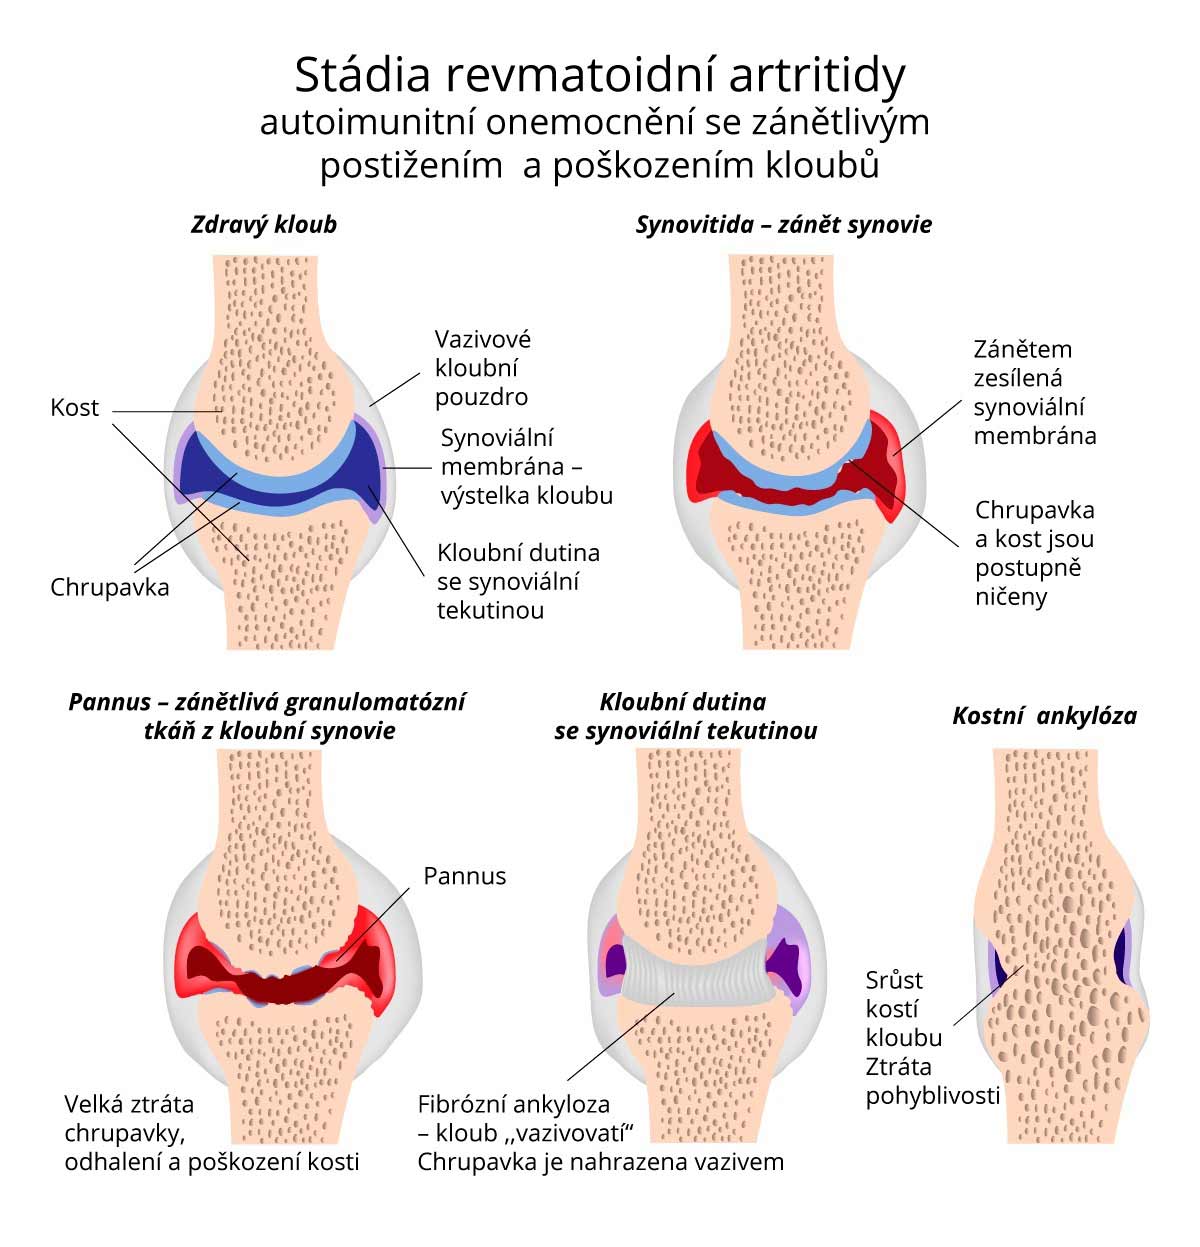 Co se děje s klouby při revmatické artritidě